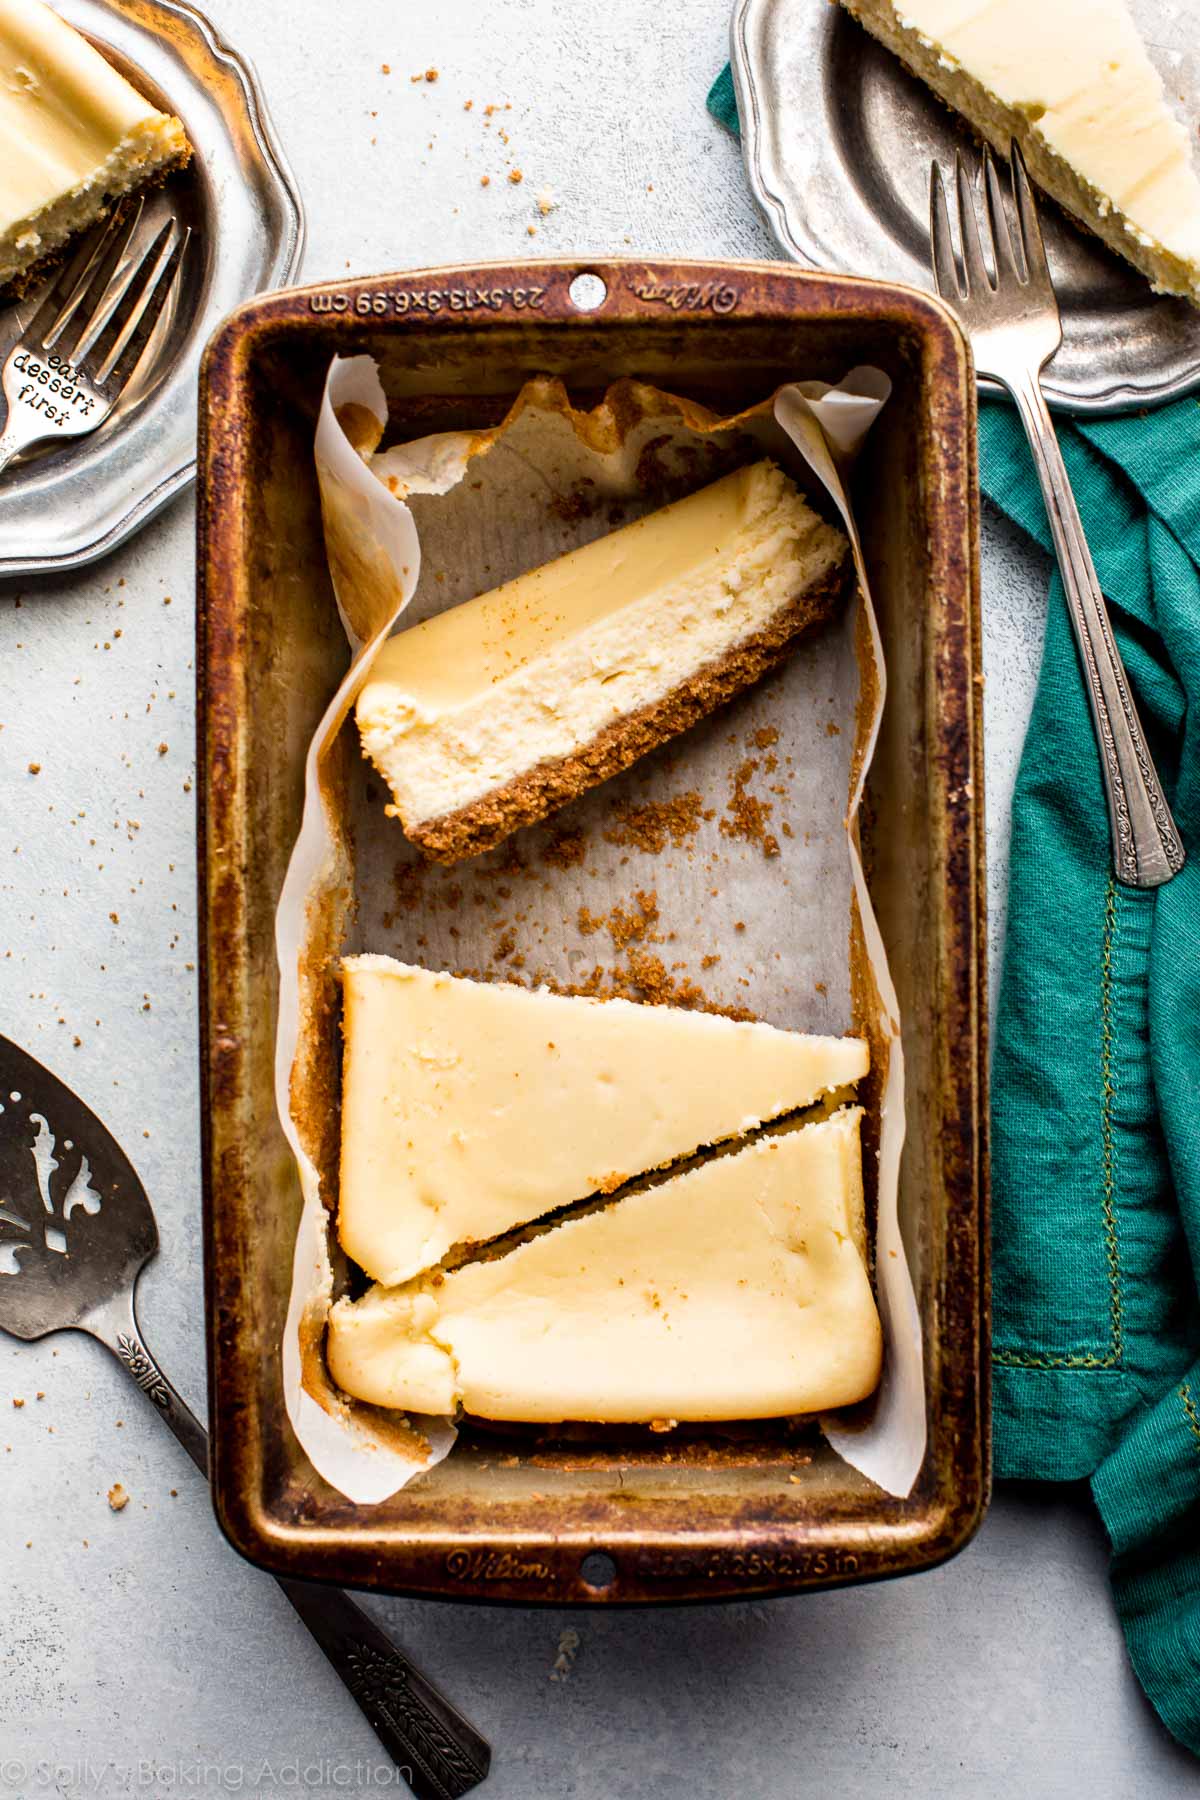 Le cheesecake en petits lots est si facile! Faites ces 5 tranches délicieusement crémeuses et épaisses dans un moule à pain! Recette sur sallysbakingaddiction.com